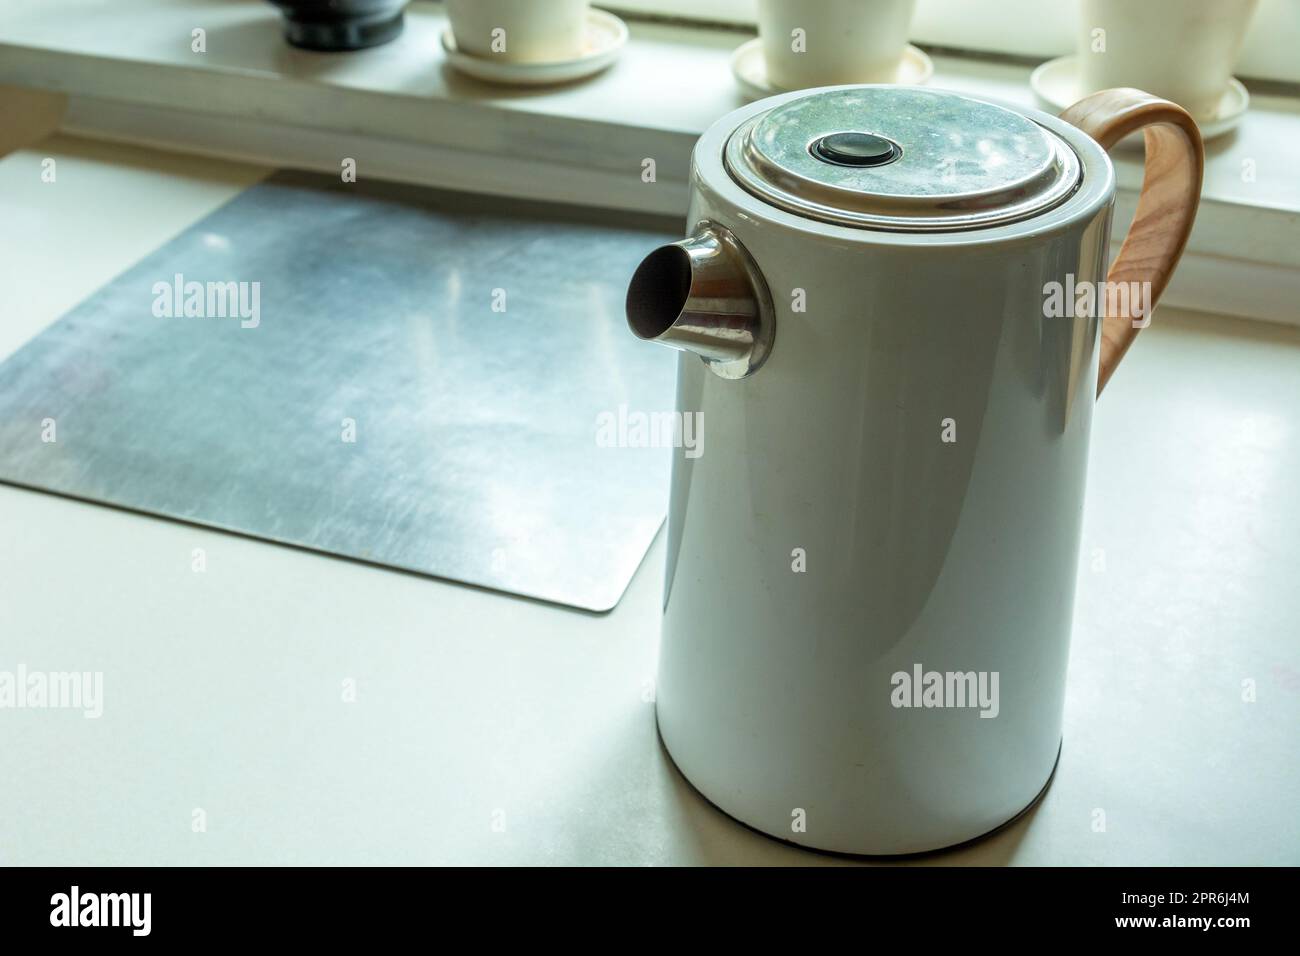 Elektrischer Wasserkocher steht auf dem Küchentisch Stockfoto